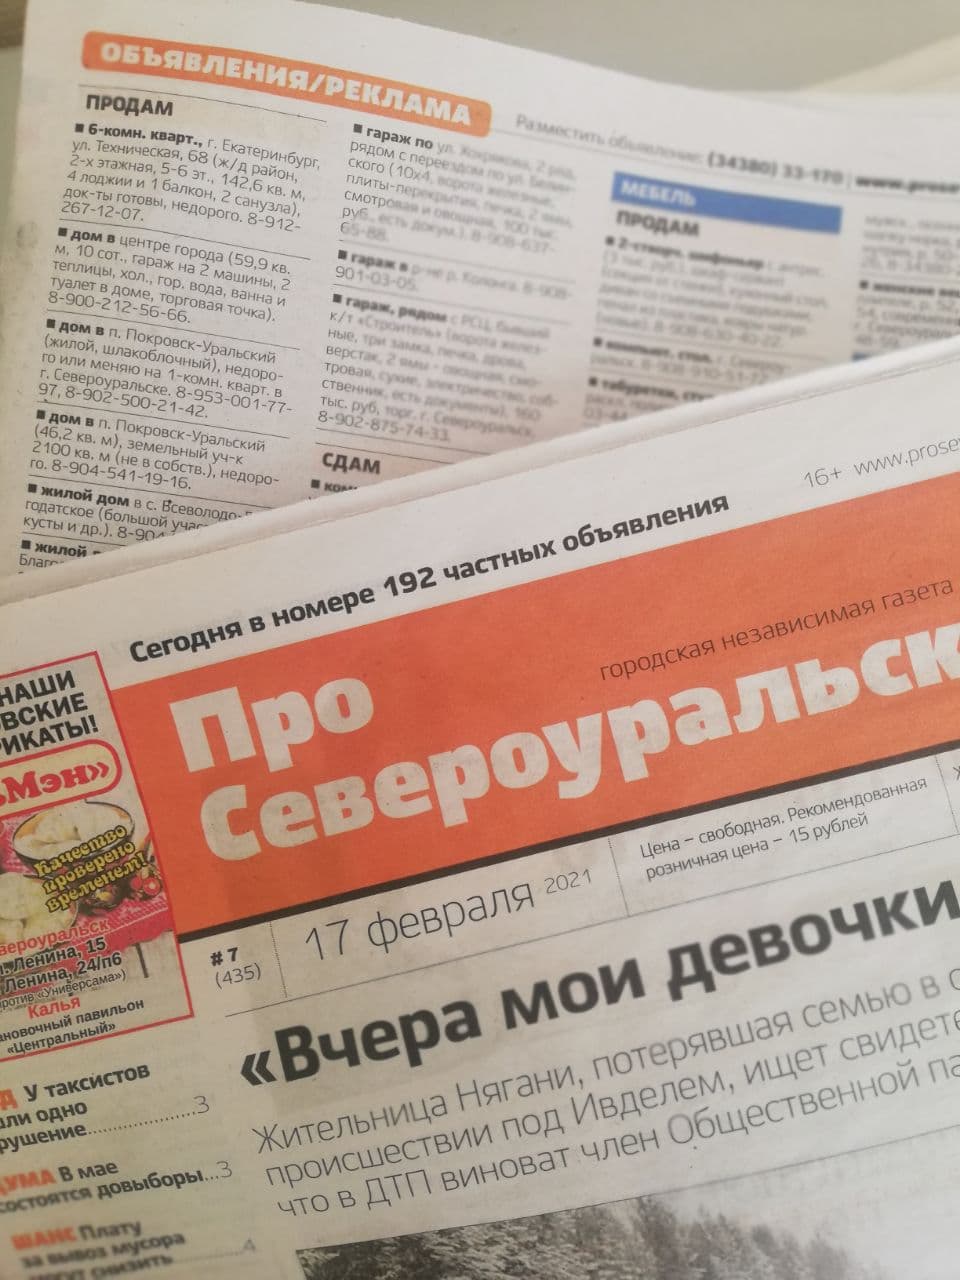 Объявления из газеты "ПроСевероуральск.ru" № 11 от 17 марта 2021 года